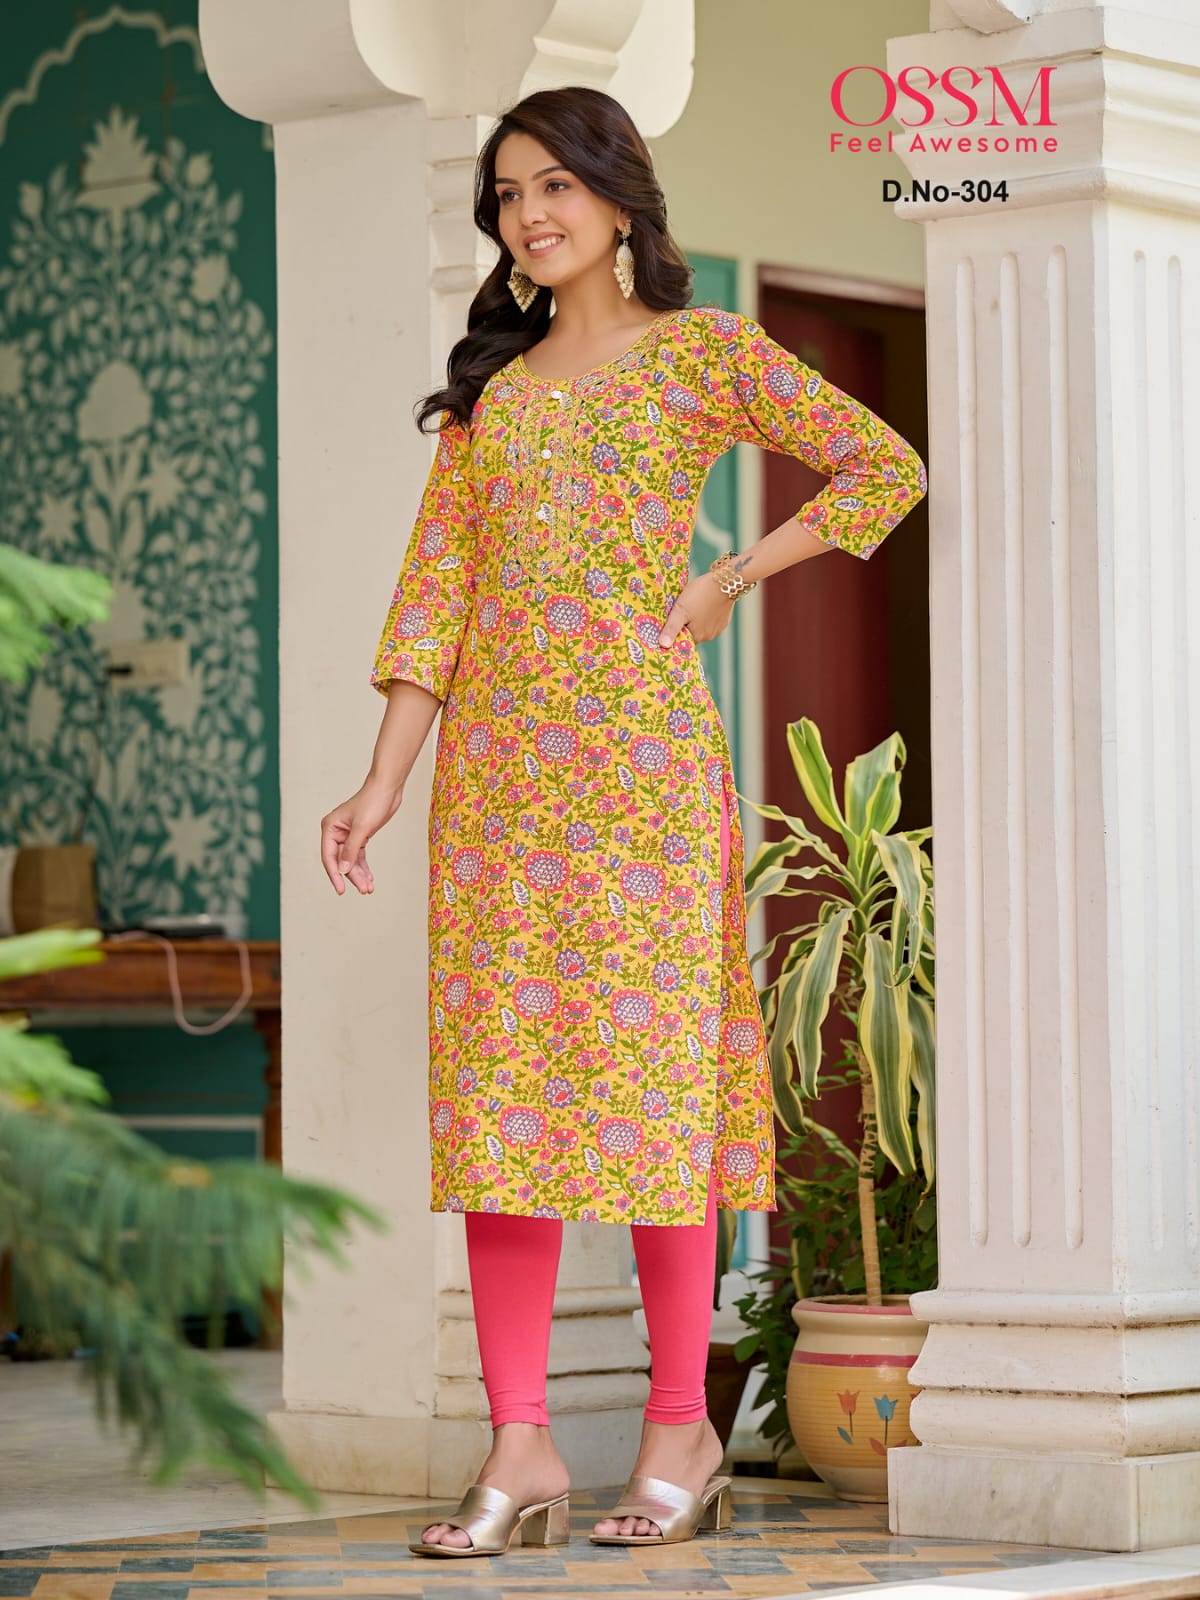 Indian Kurta with Bottom Pant Palazzo Kurti Dress Set Women Ethnic Tops  Tunic S #SrishtiF… | Cotton kurti designs casual, Trendy dress outfits, Cotton  kurti designs